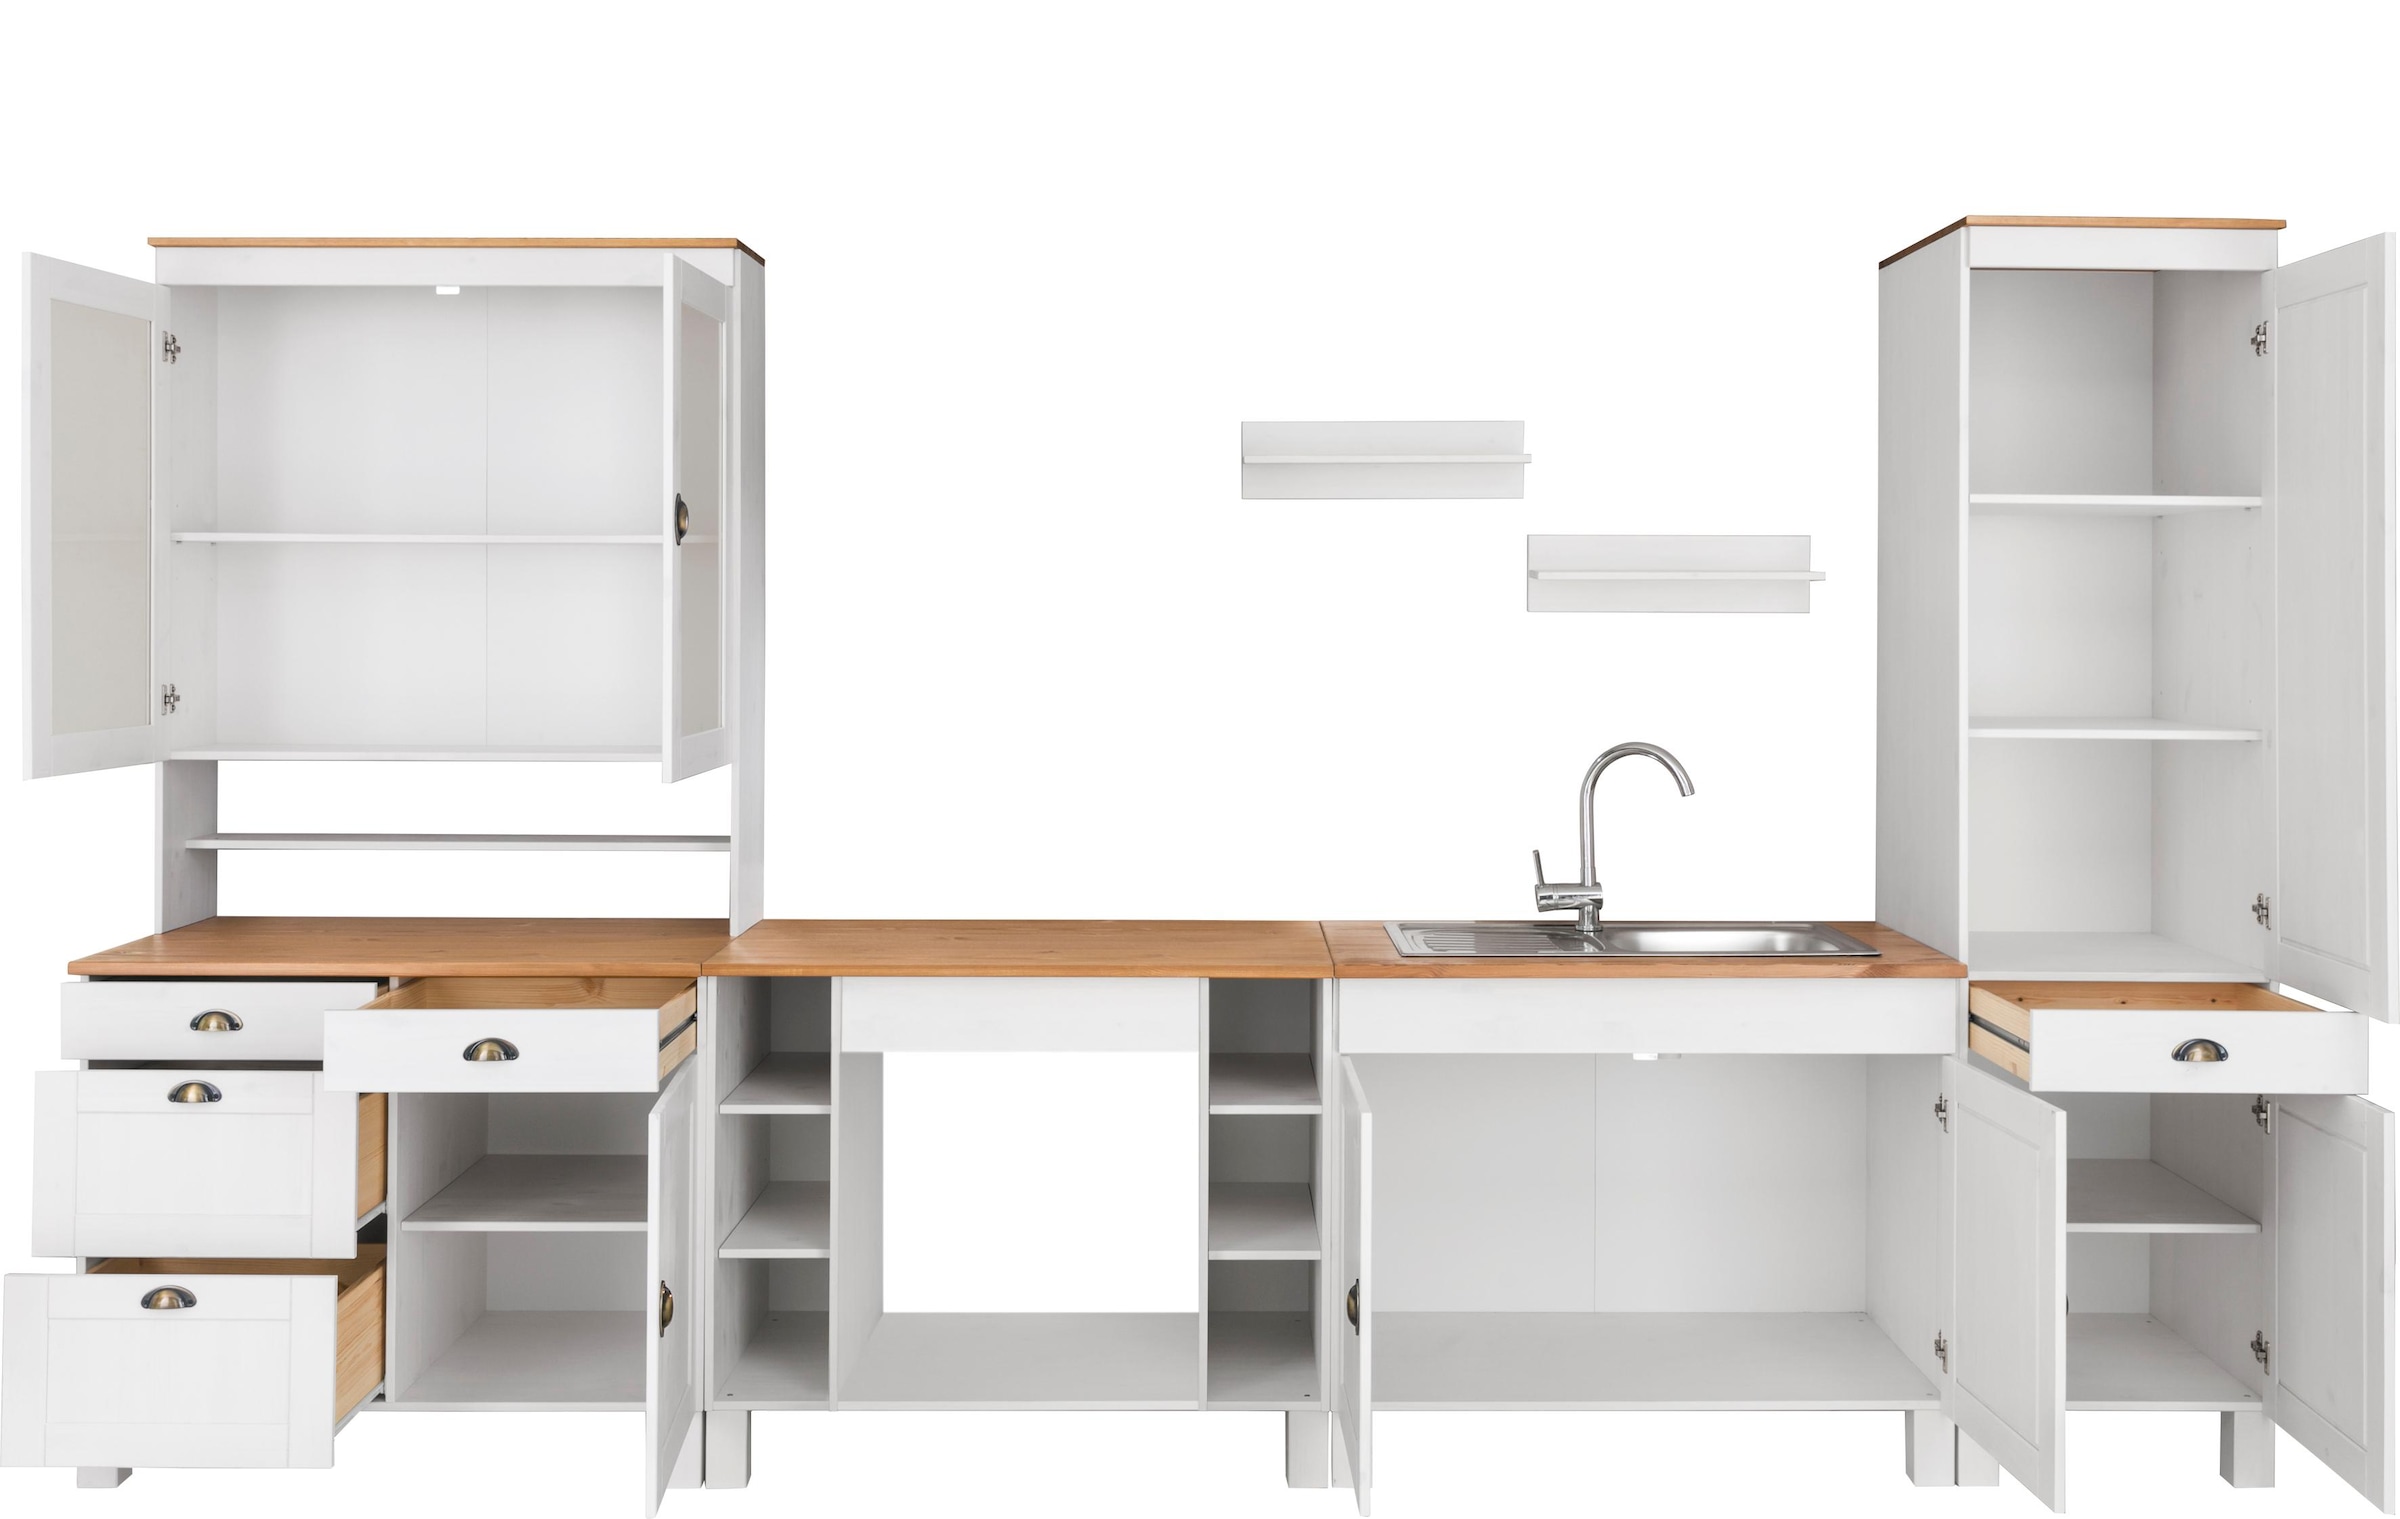 Home affaire Küchenzeile »Oslo«, Breite 350 cm, in 2 Tiefen, ohne E-Geräte